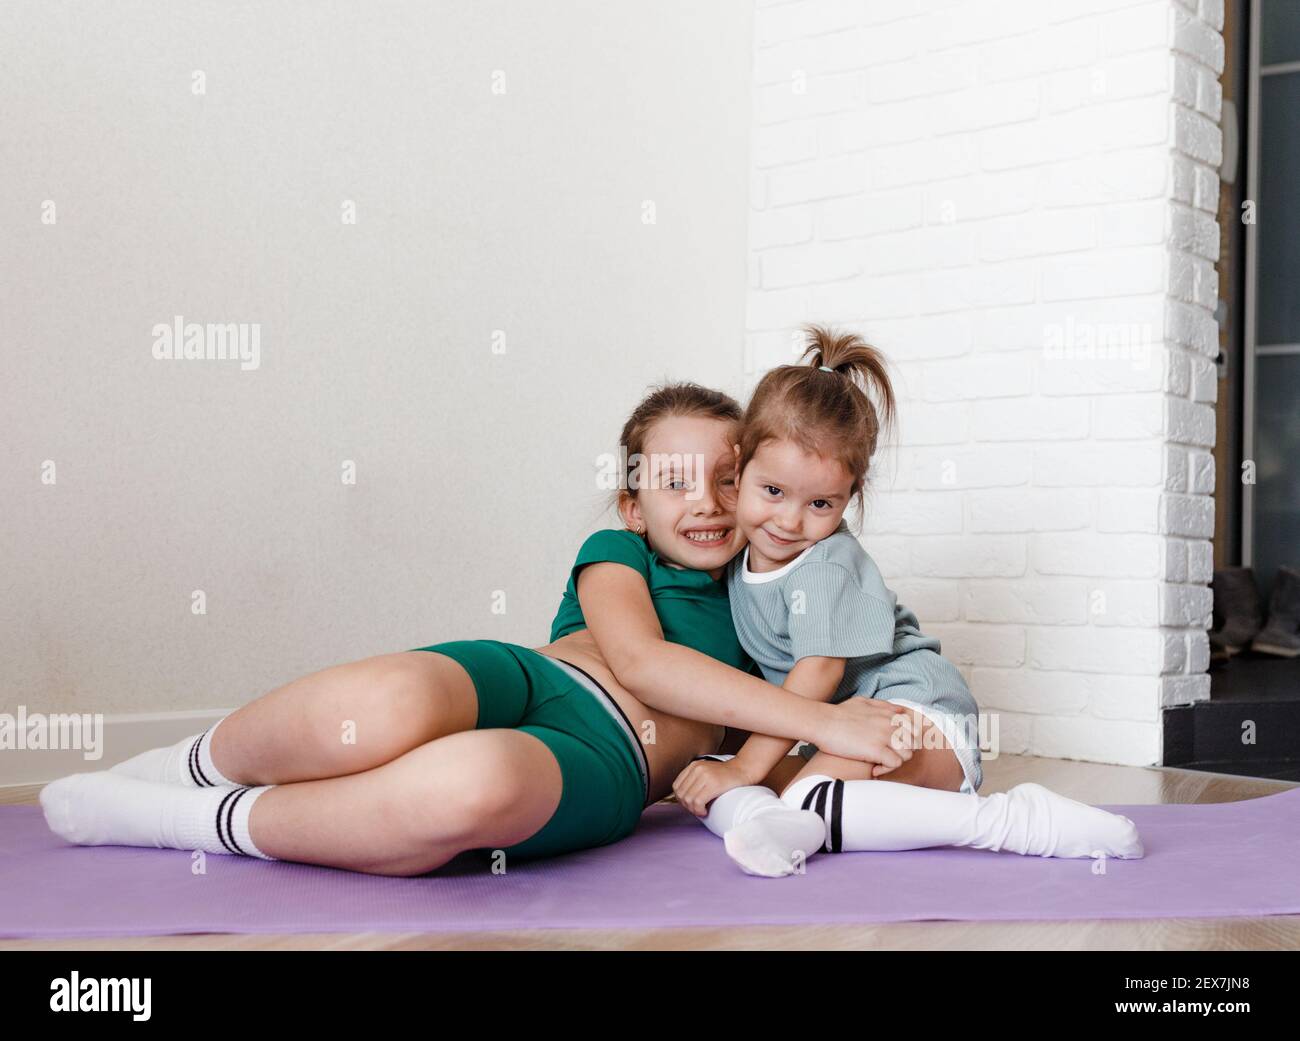 con ropa deportiva están sentadas en el de la casa y abrazándose Fotografía de stock - Alamy